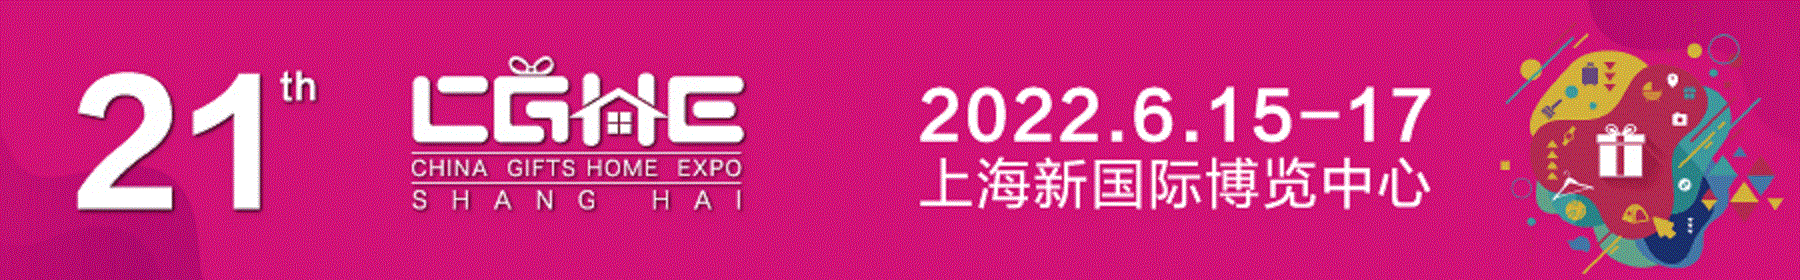 2022年中国上海国际礼品展览会